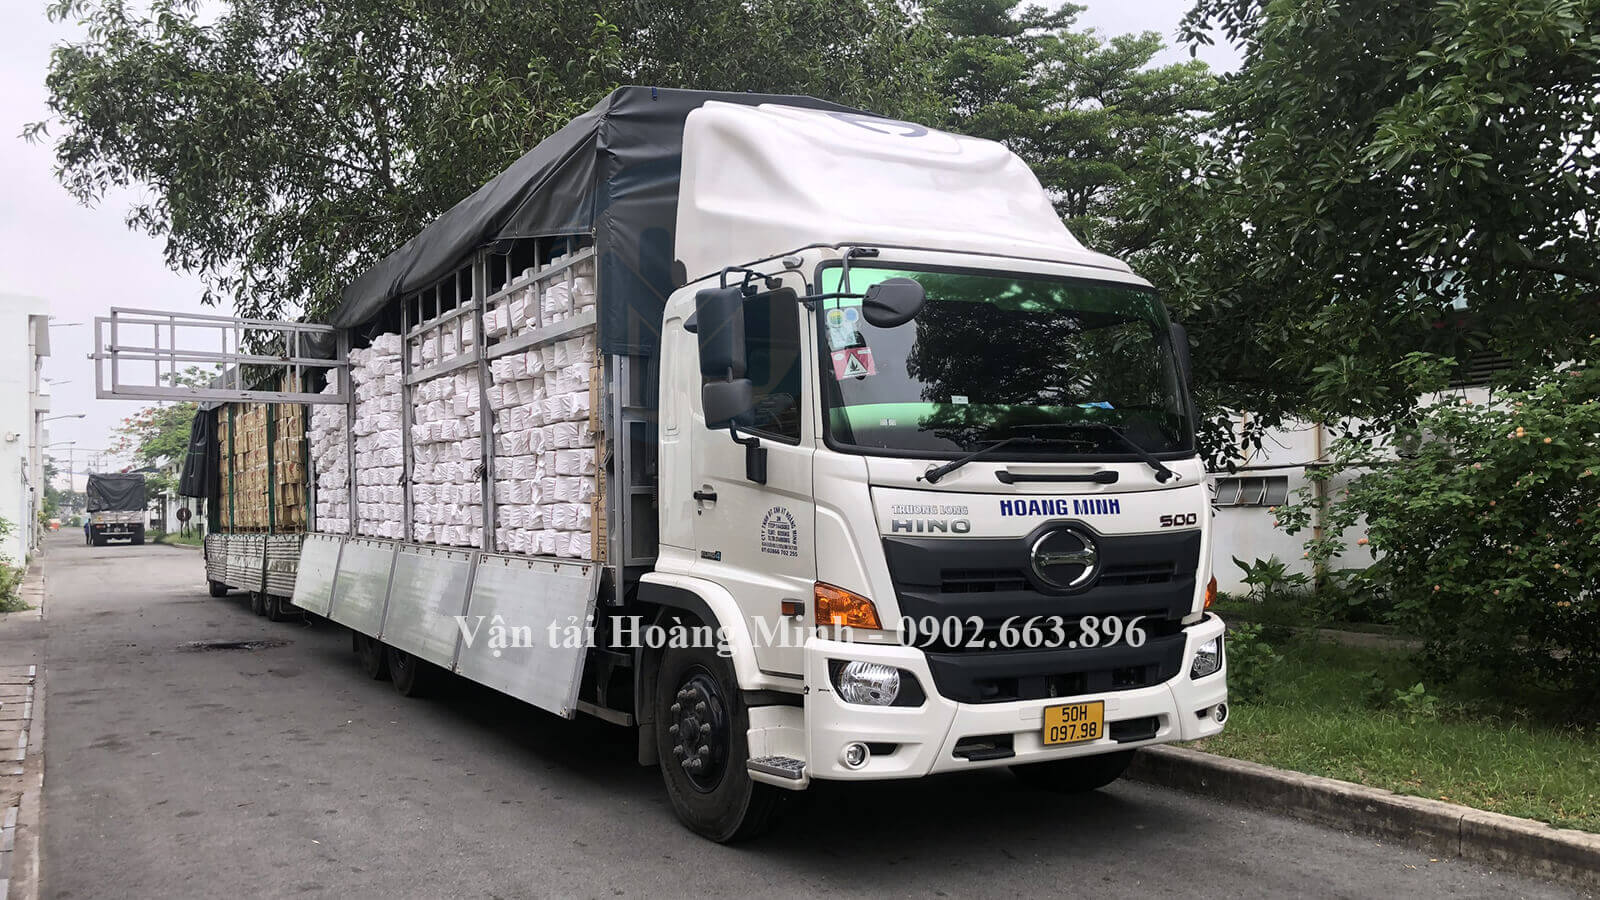 thuê xe tải chở hàng quận Bình Tân chất lượng uy tín.jpg